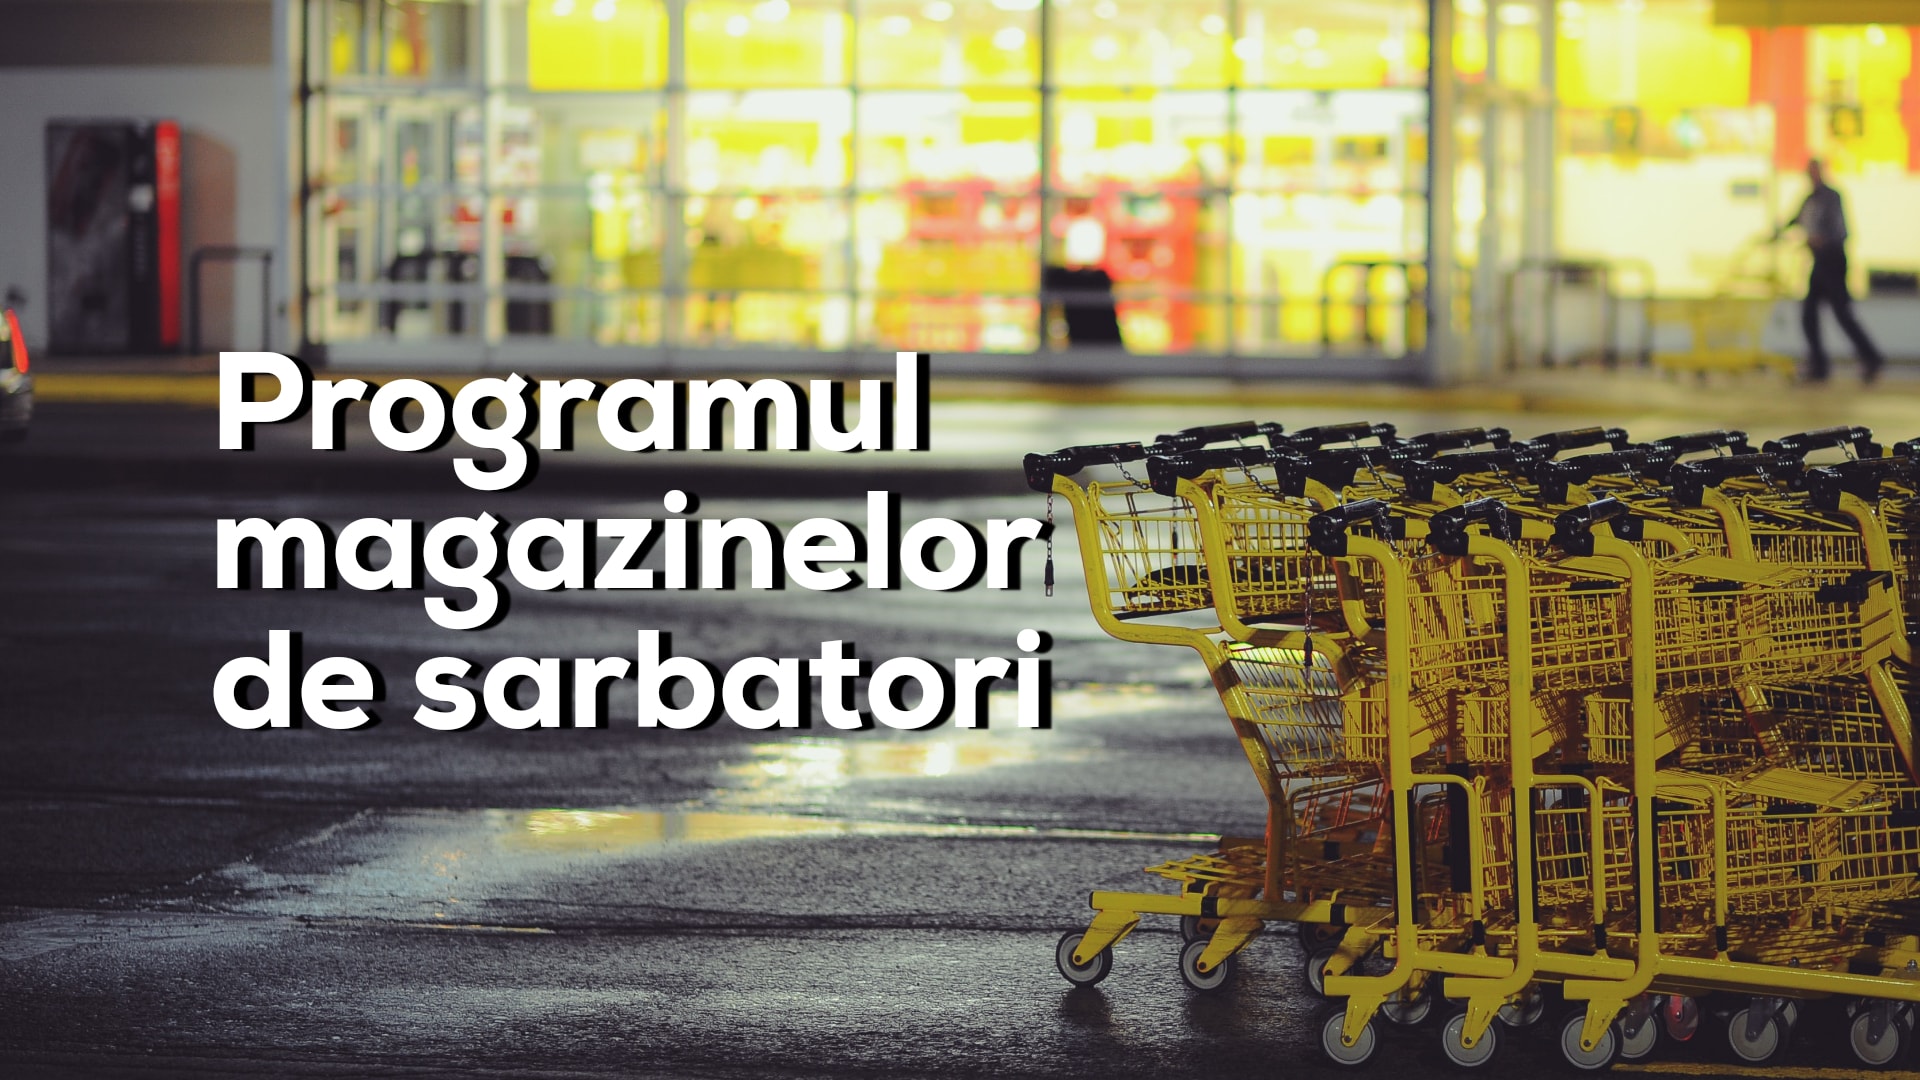 Programul mall-urilor și hypermarket-urilor din Cluj de Crăciun și Revelion